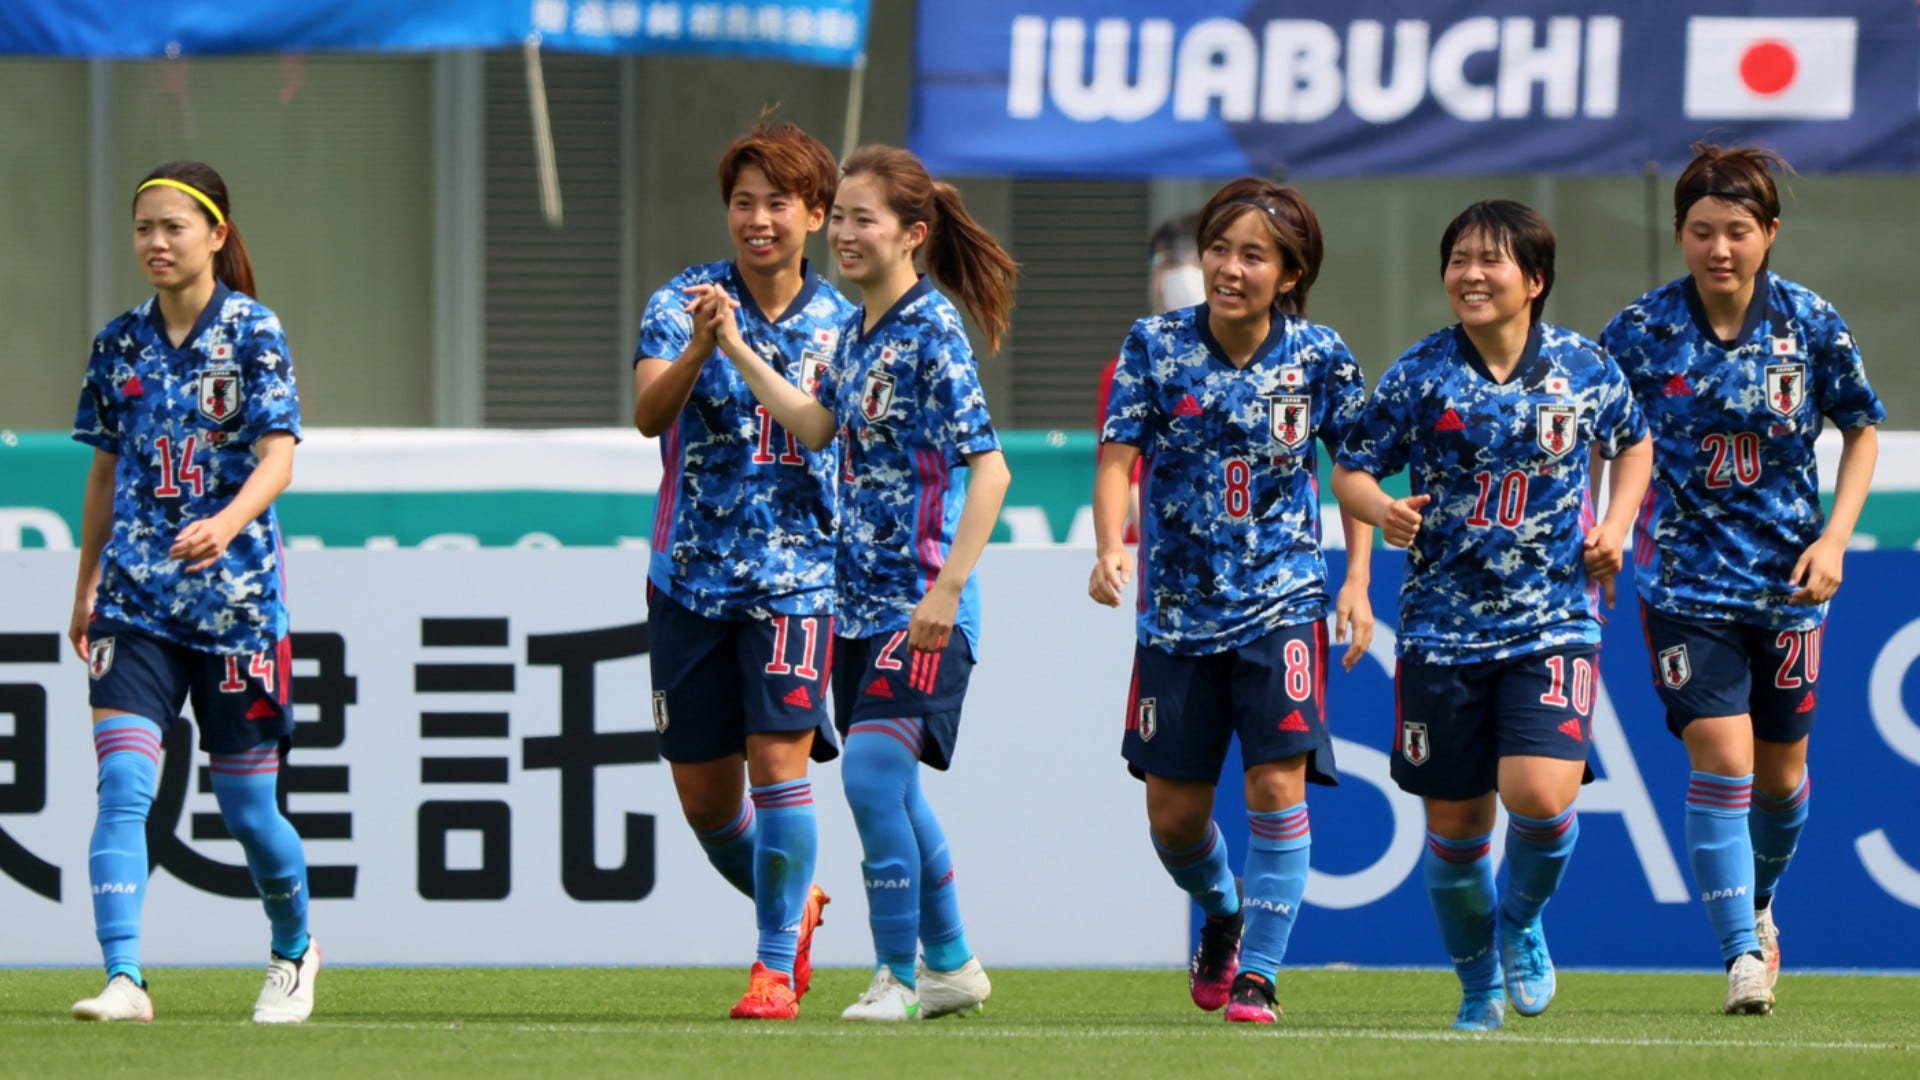 7月14日テレビ放送 なでしこジャパンvsオーストラリア女子代表 地上波tv中継予定 Goal Com 日本